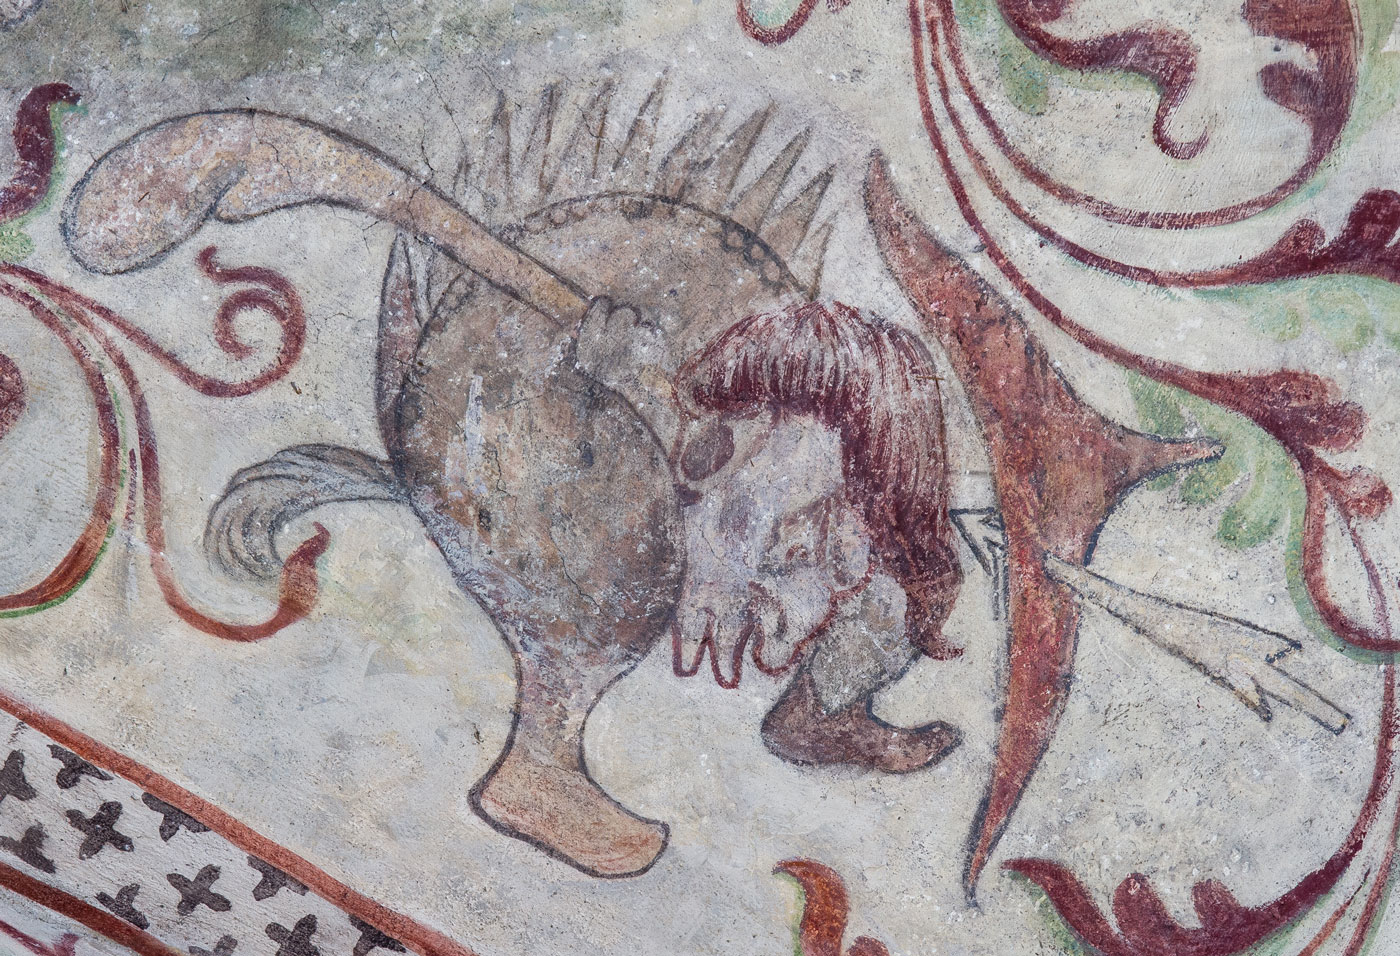 Detalj ur Ett slags svin, med människohuvud och skor på fötterna, och en motståndare i form av en vildman beväpnad med båge - Ösmo kyrka